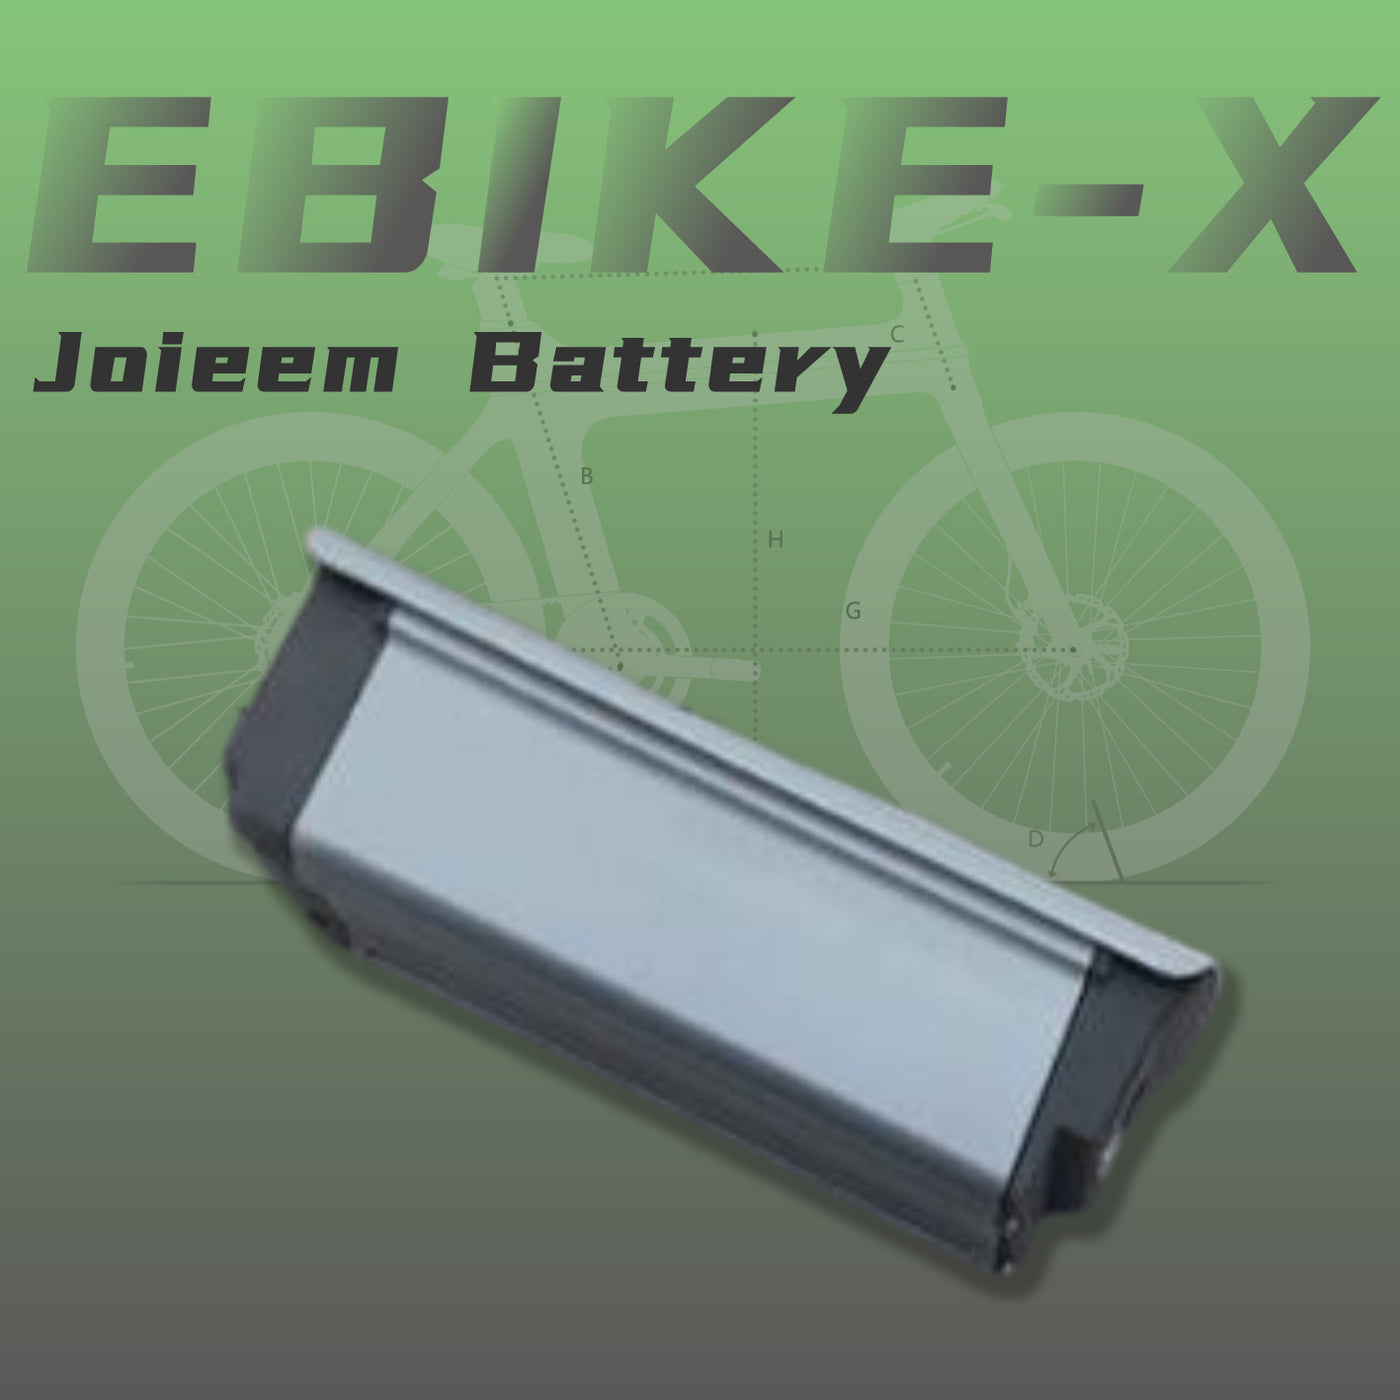 Ebike-X-batterij